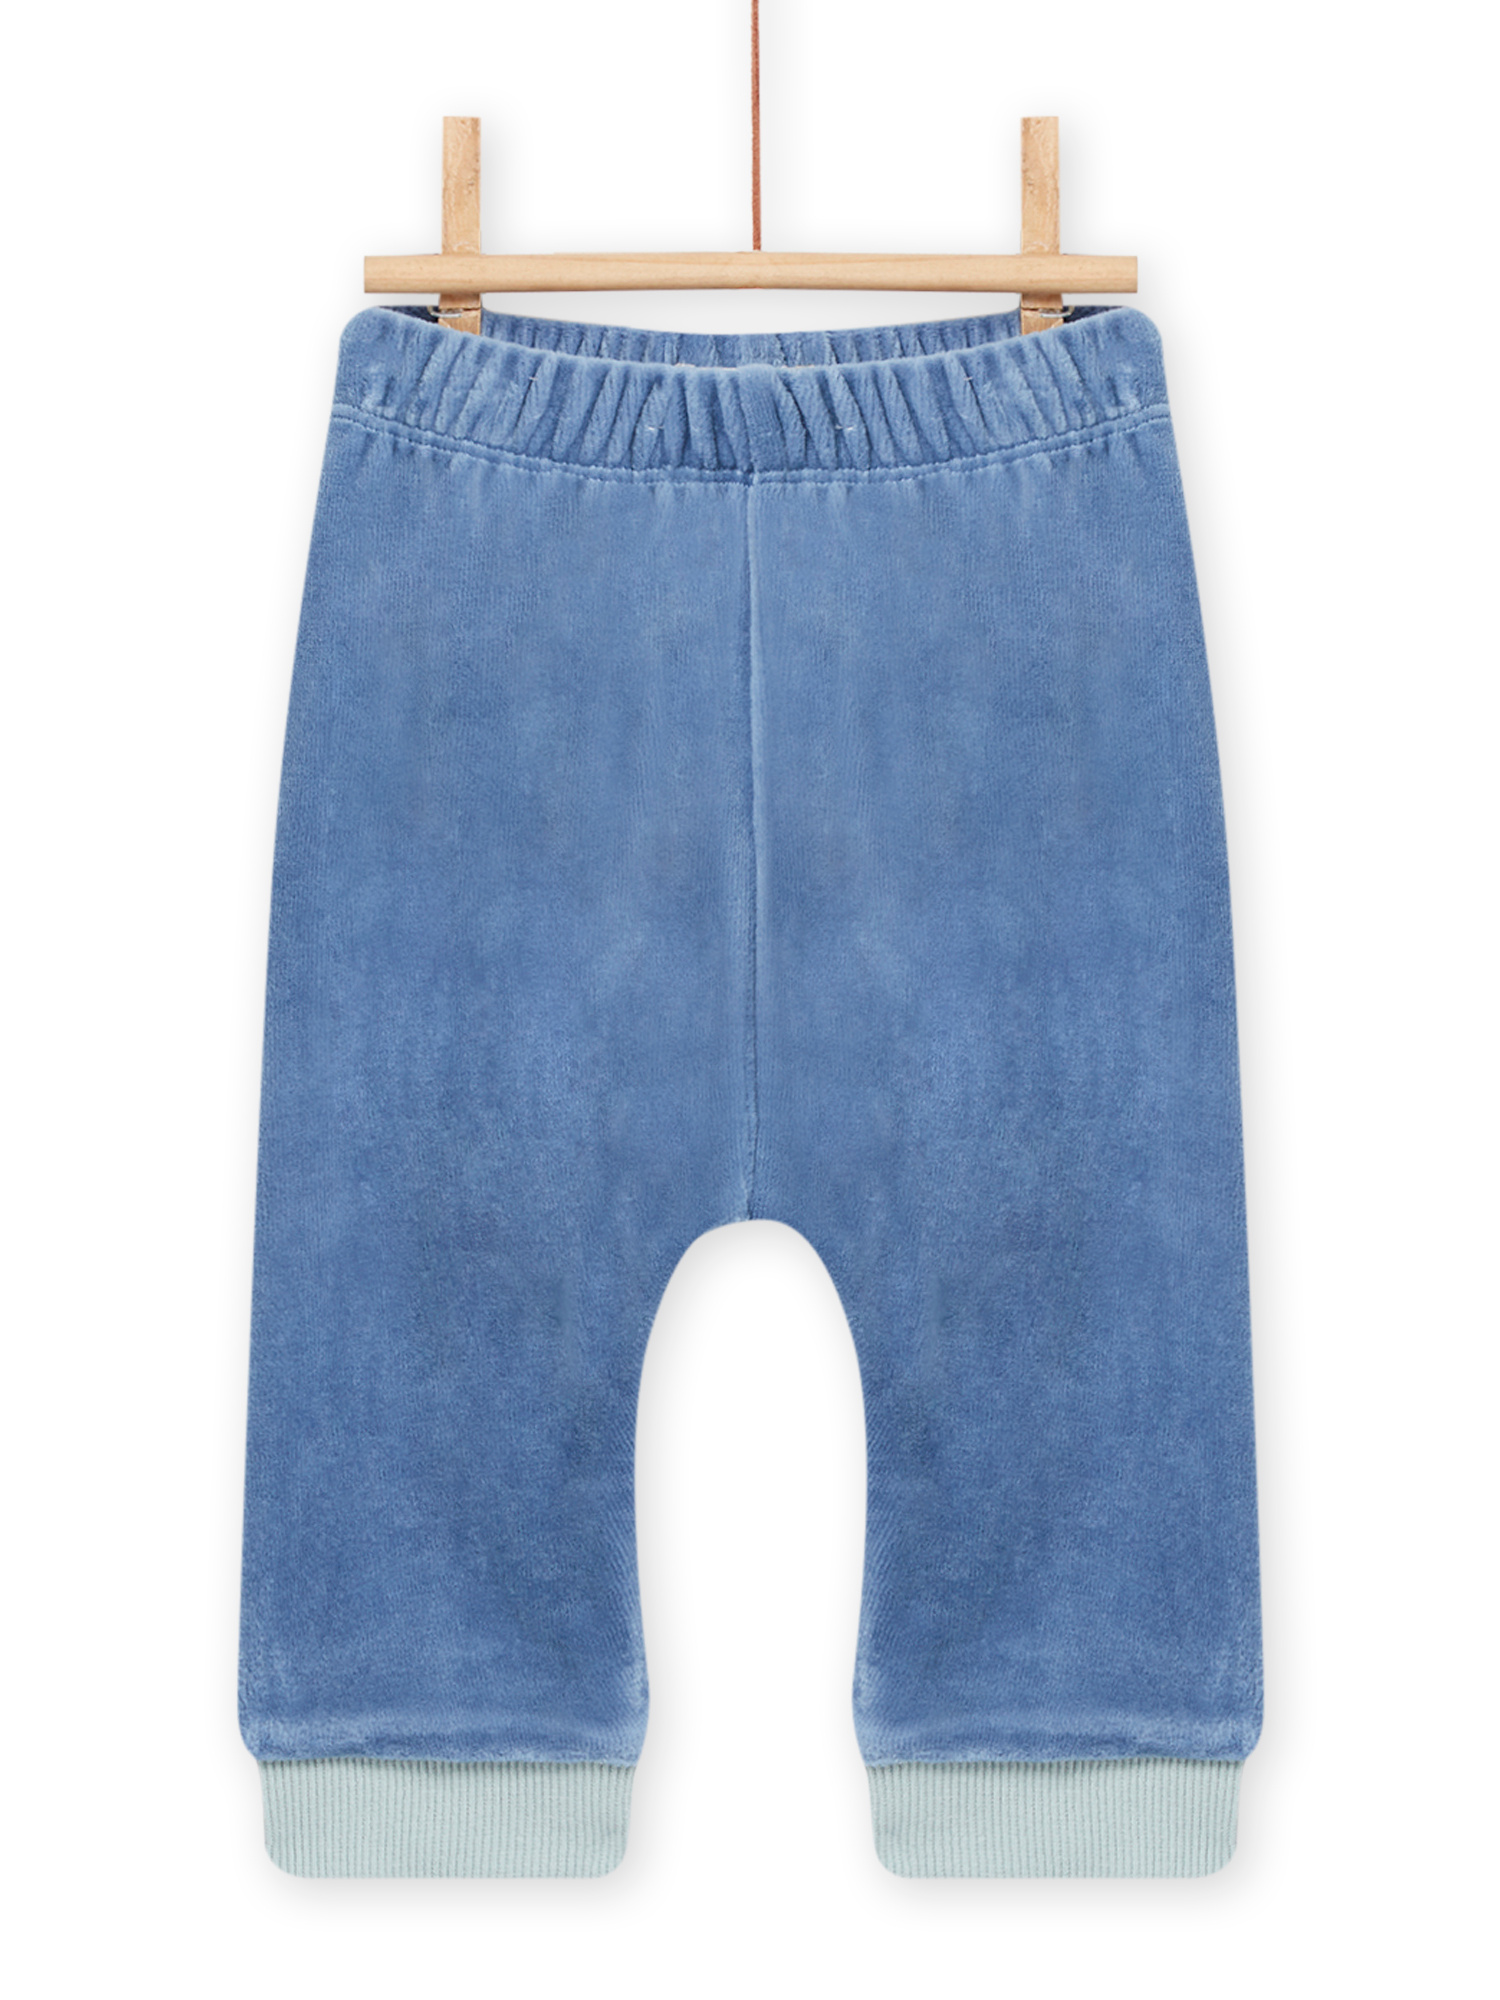 Pantalon Bleu Arctique Bébé Garçon - 6M - Du Pareil Au Même